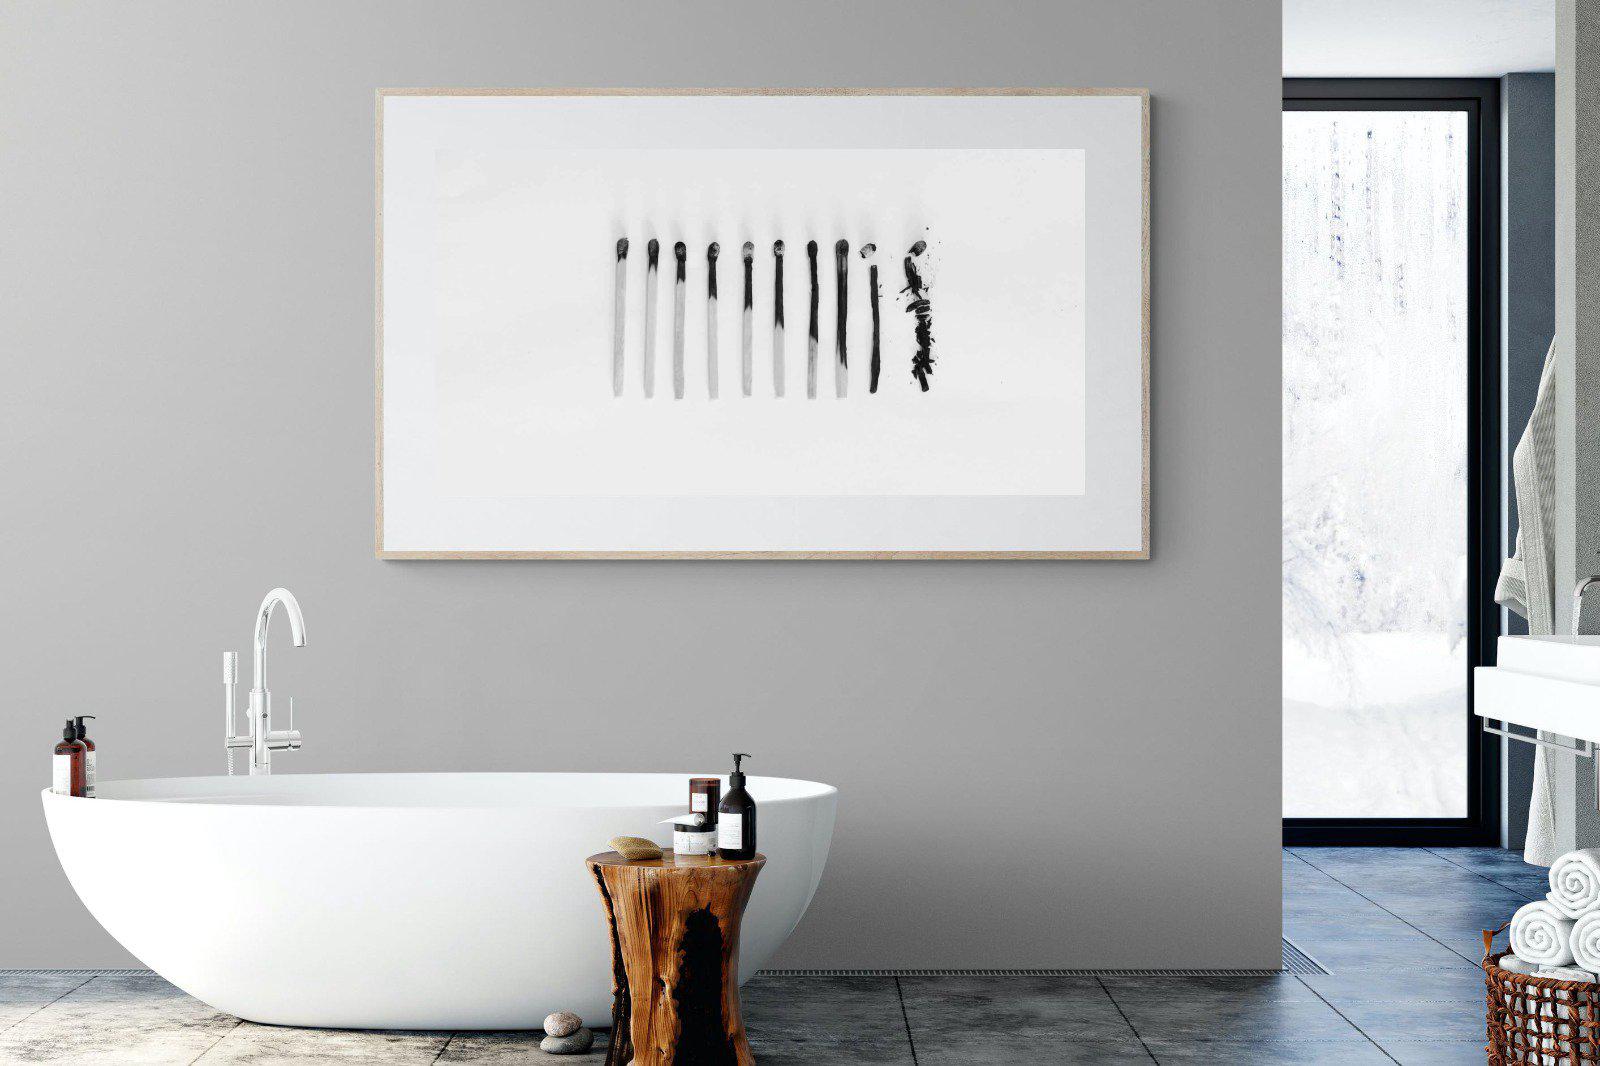 Matchsticks-Wall_Art-180 x 110cm-Framed Print-Wood-Pixalot